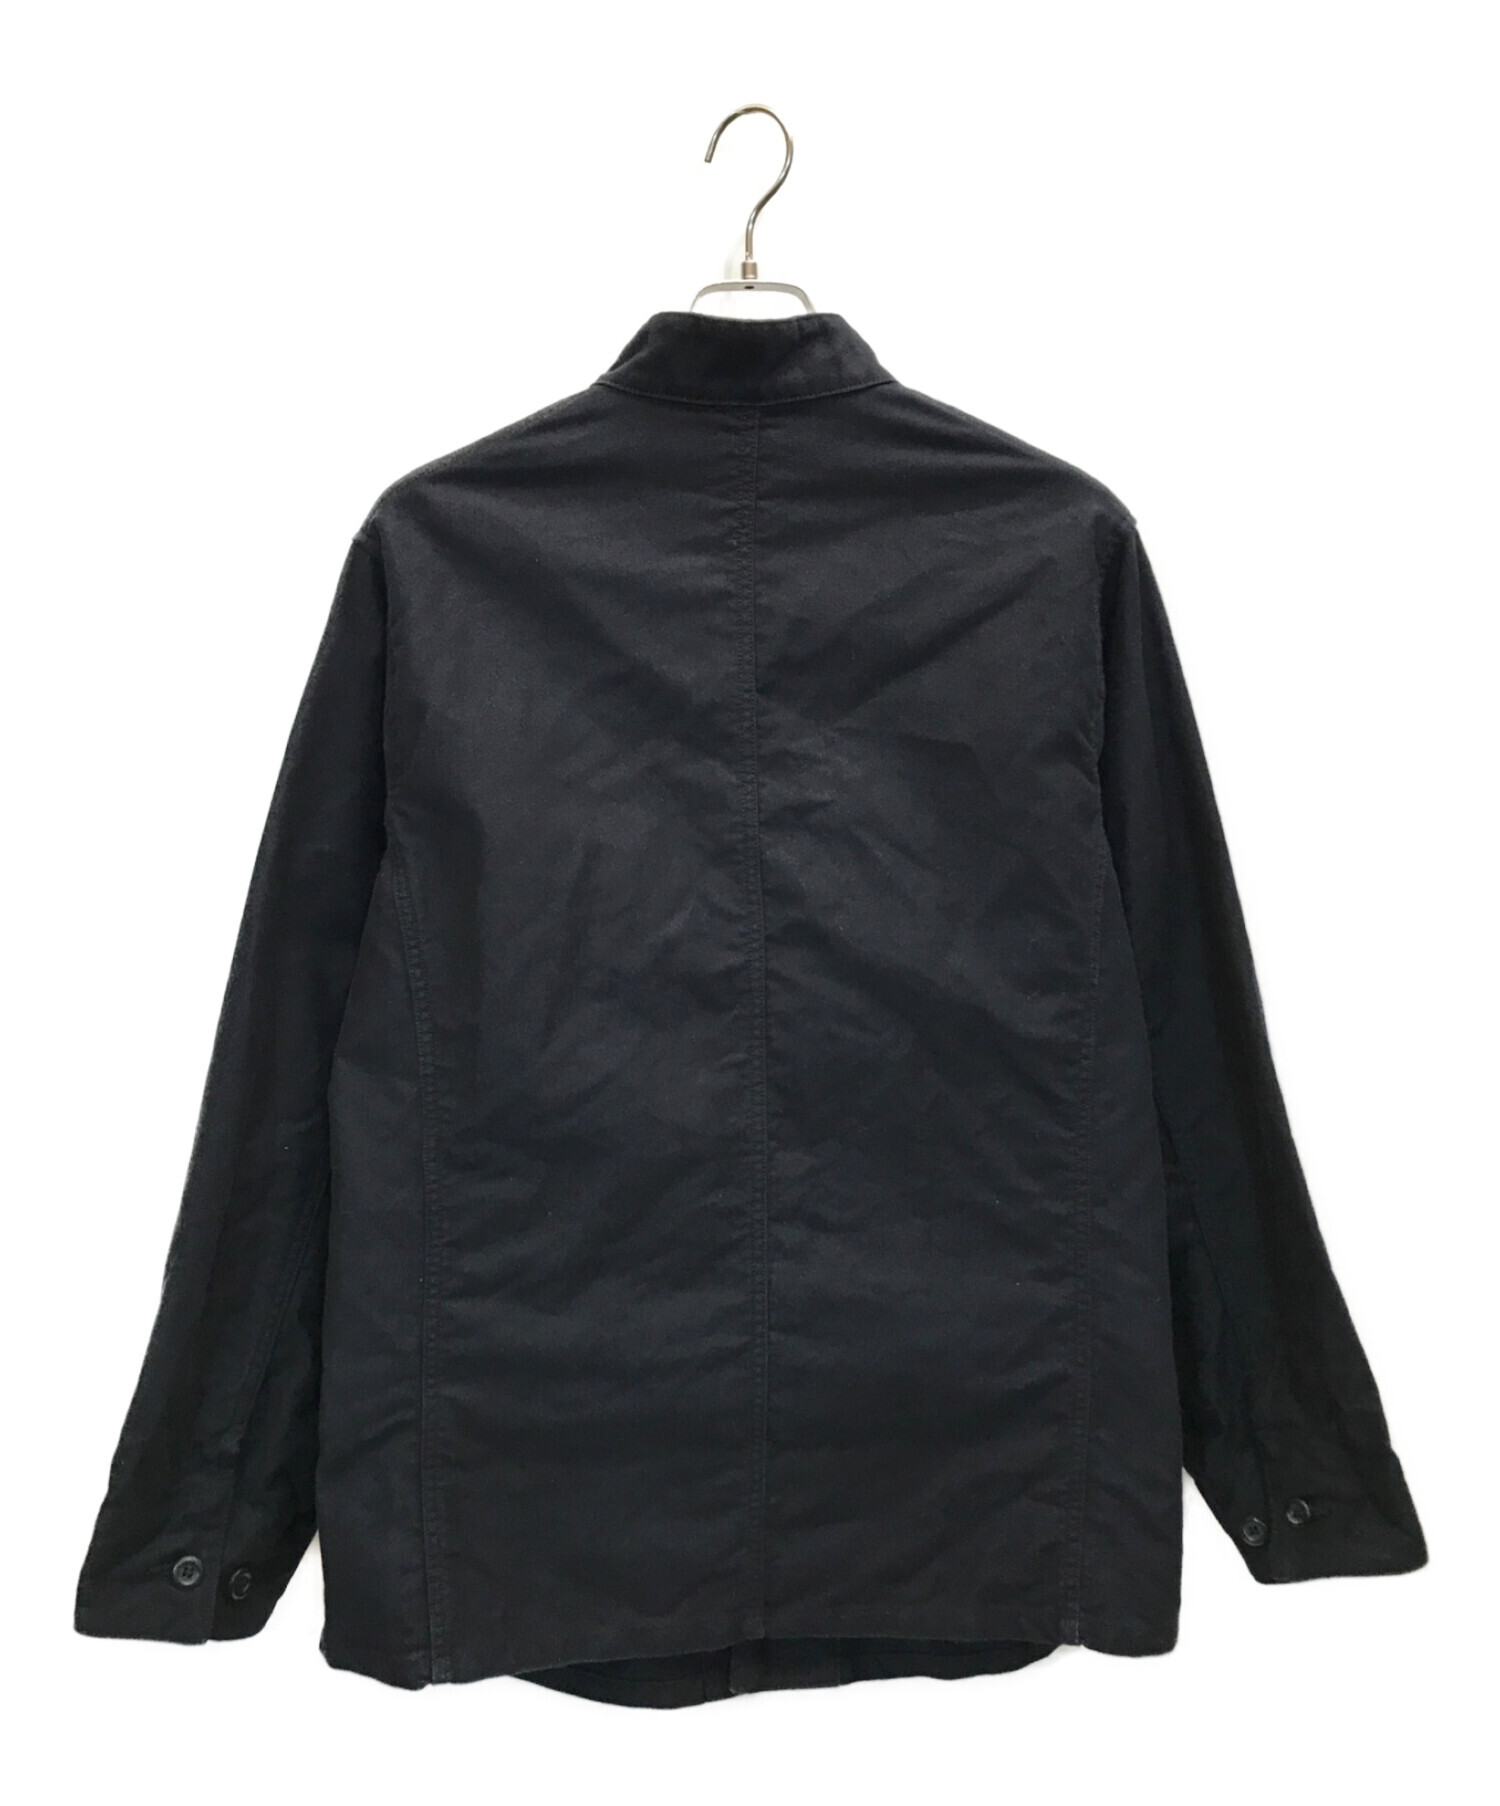 BONCOURA (ボンクラ) English work jacket Moleskin イングリッシュワークジャケットモールスキン  スタンドカラーワークジャケット　モールスキンジャケット ブラック サイズ:42